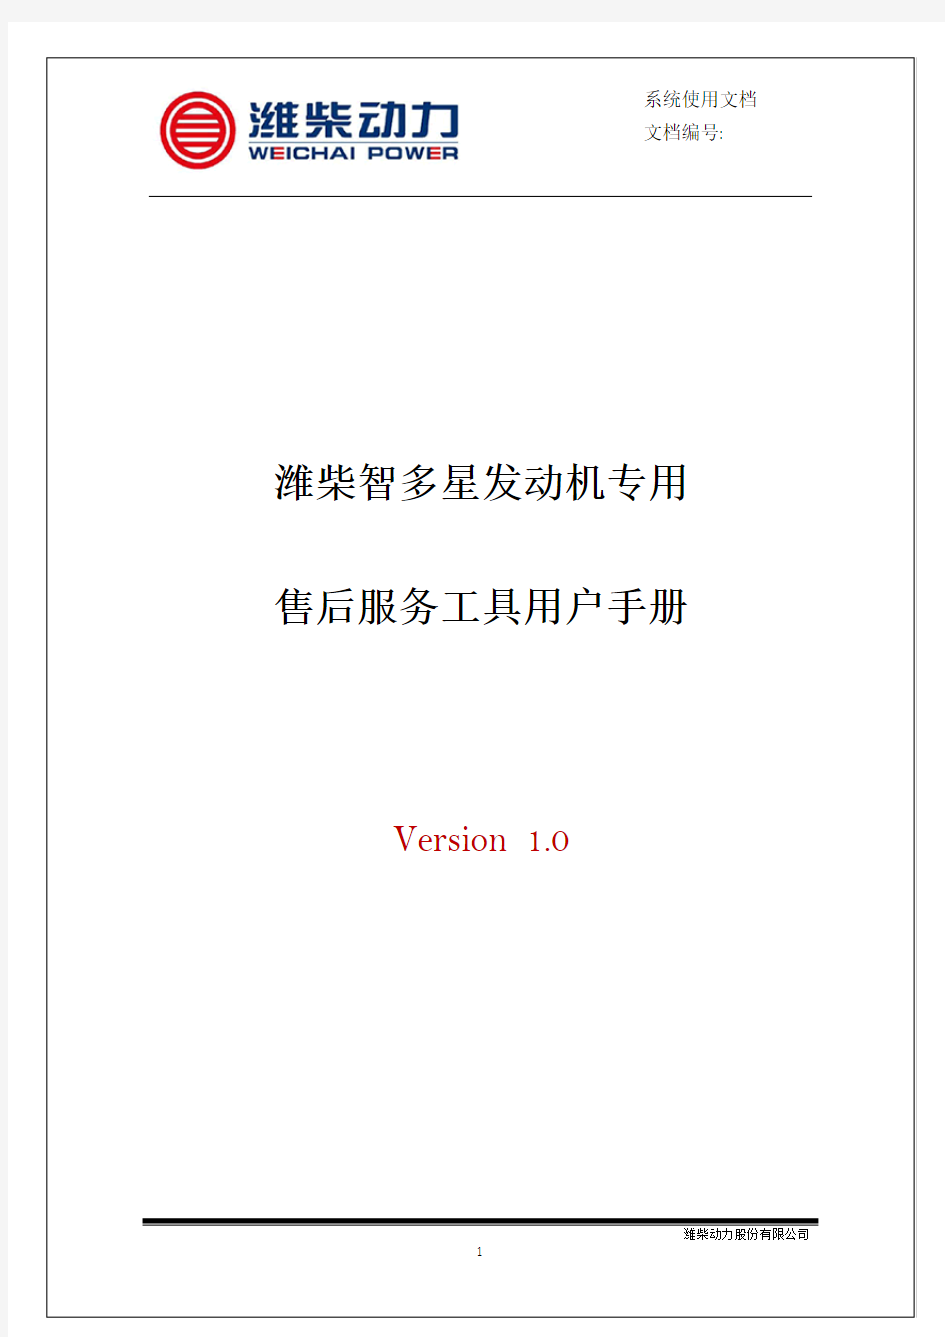 潍柴智多星专用诊断软件用户手册V1.0(1)